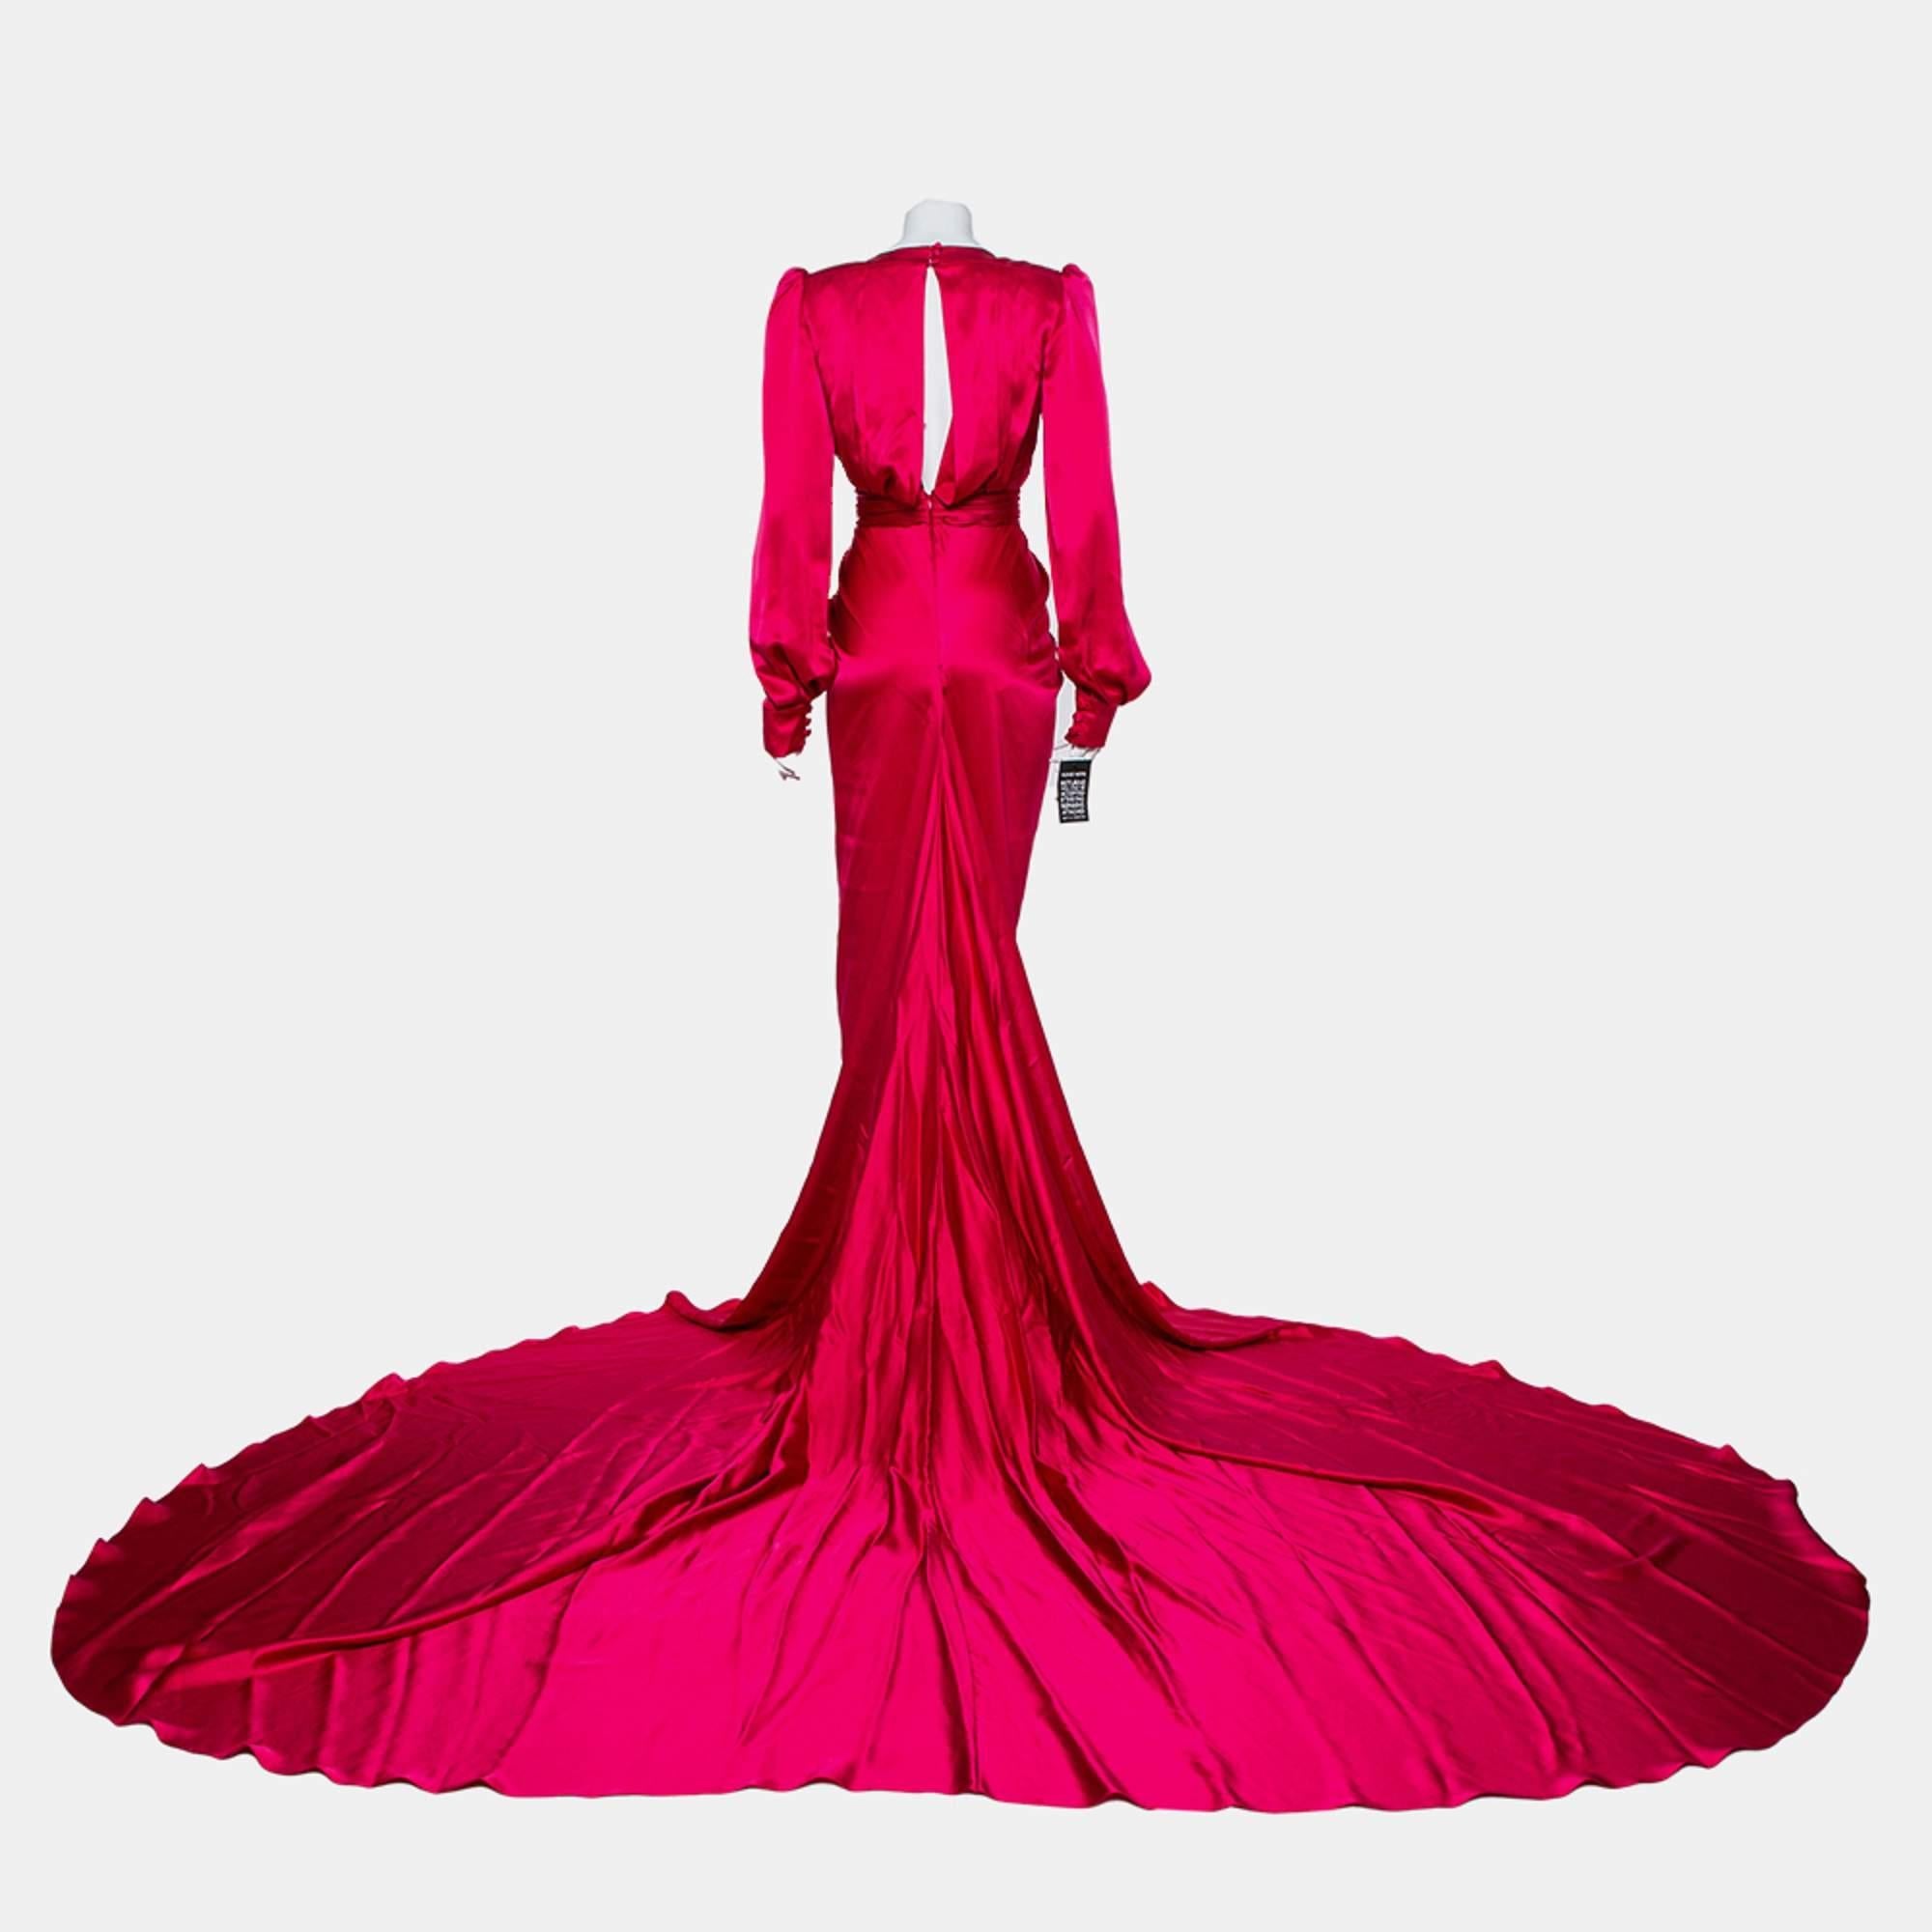 Kreieren Sie die atemberaubendsten Looks auf dem roten Teppich mit diesem wunderschönen Kleid von Ong-Oaj Pairam Angelica, das einer Diva würdig ist. Dieses Kleid aus fuchsia-rosafarbenem Satin zeichnet sich durch eine plissierte Silhouette mit